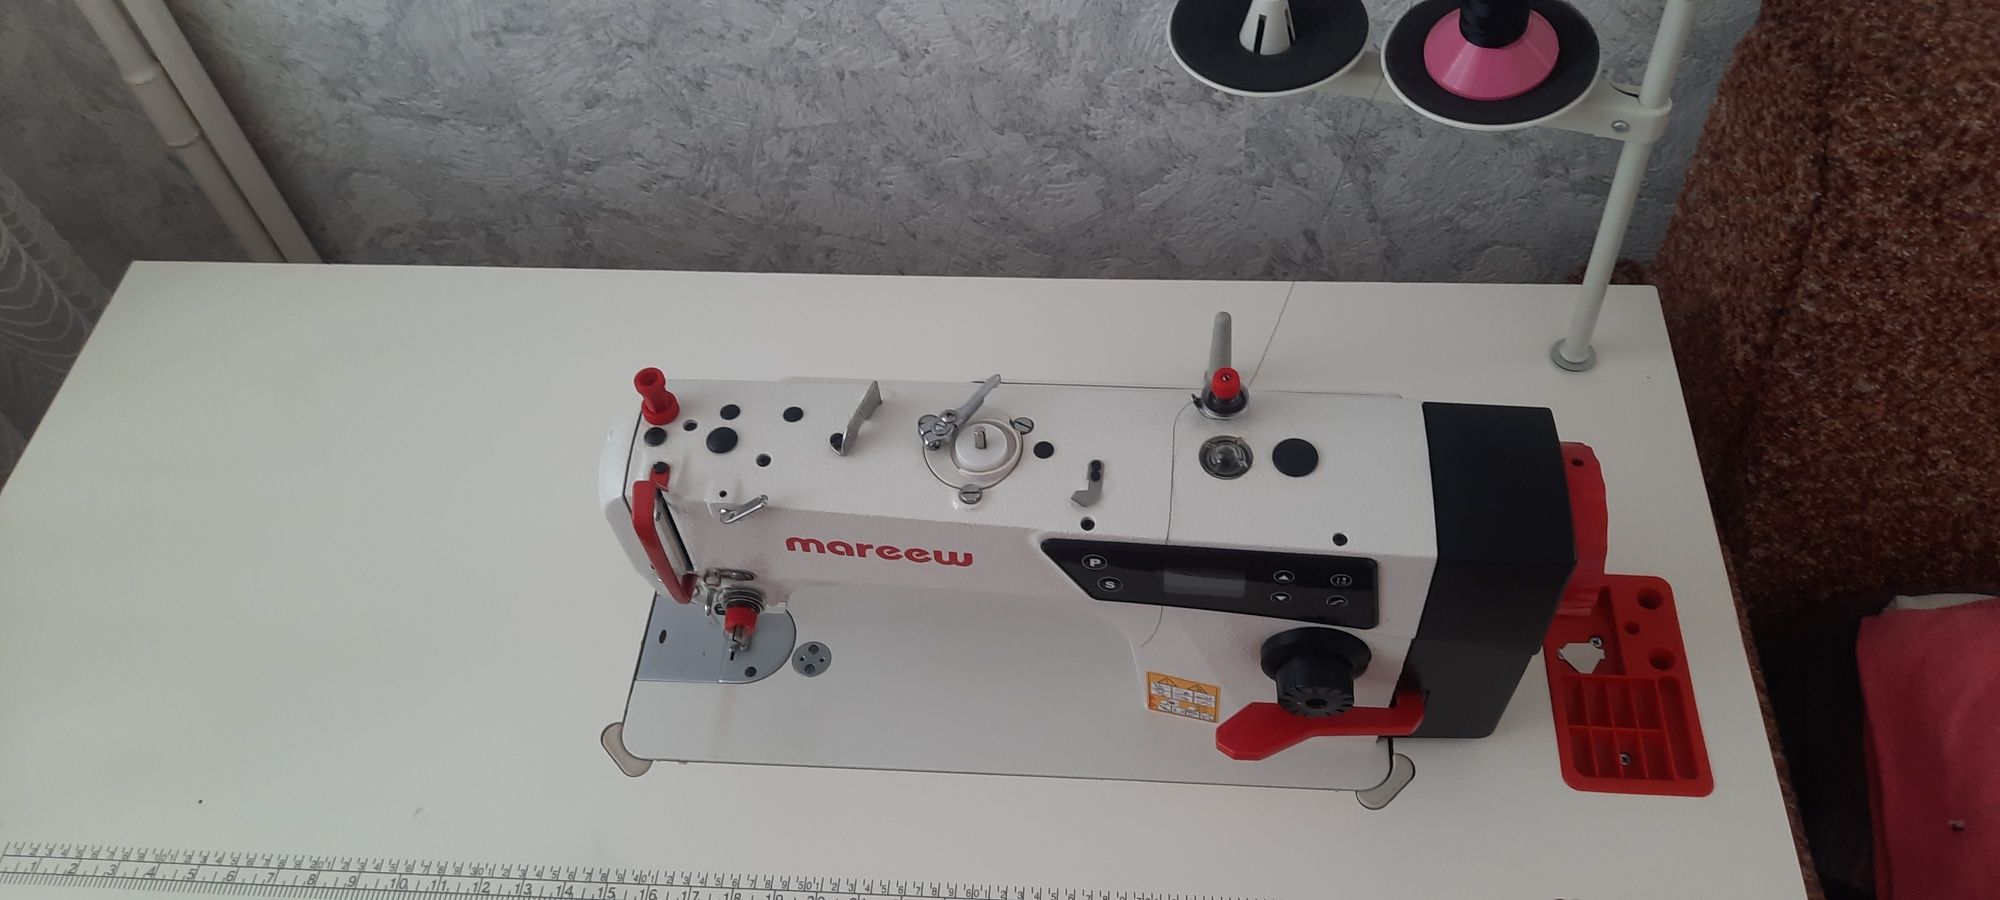 Промислова прямострочна швейна машина Mareew M2